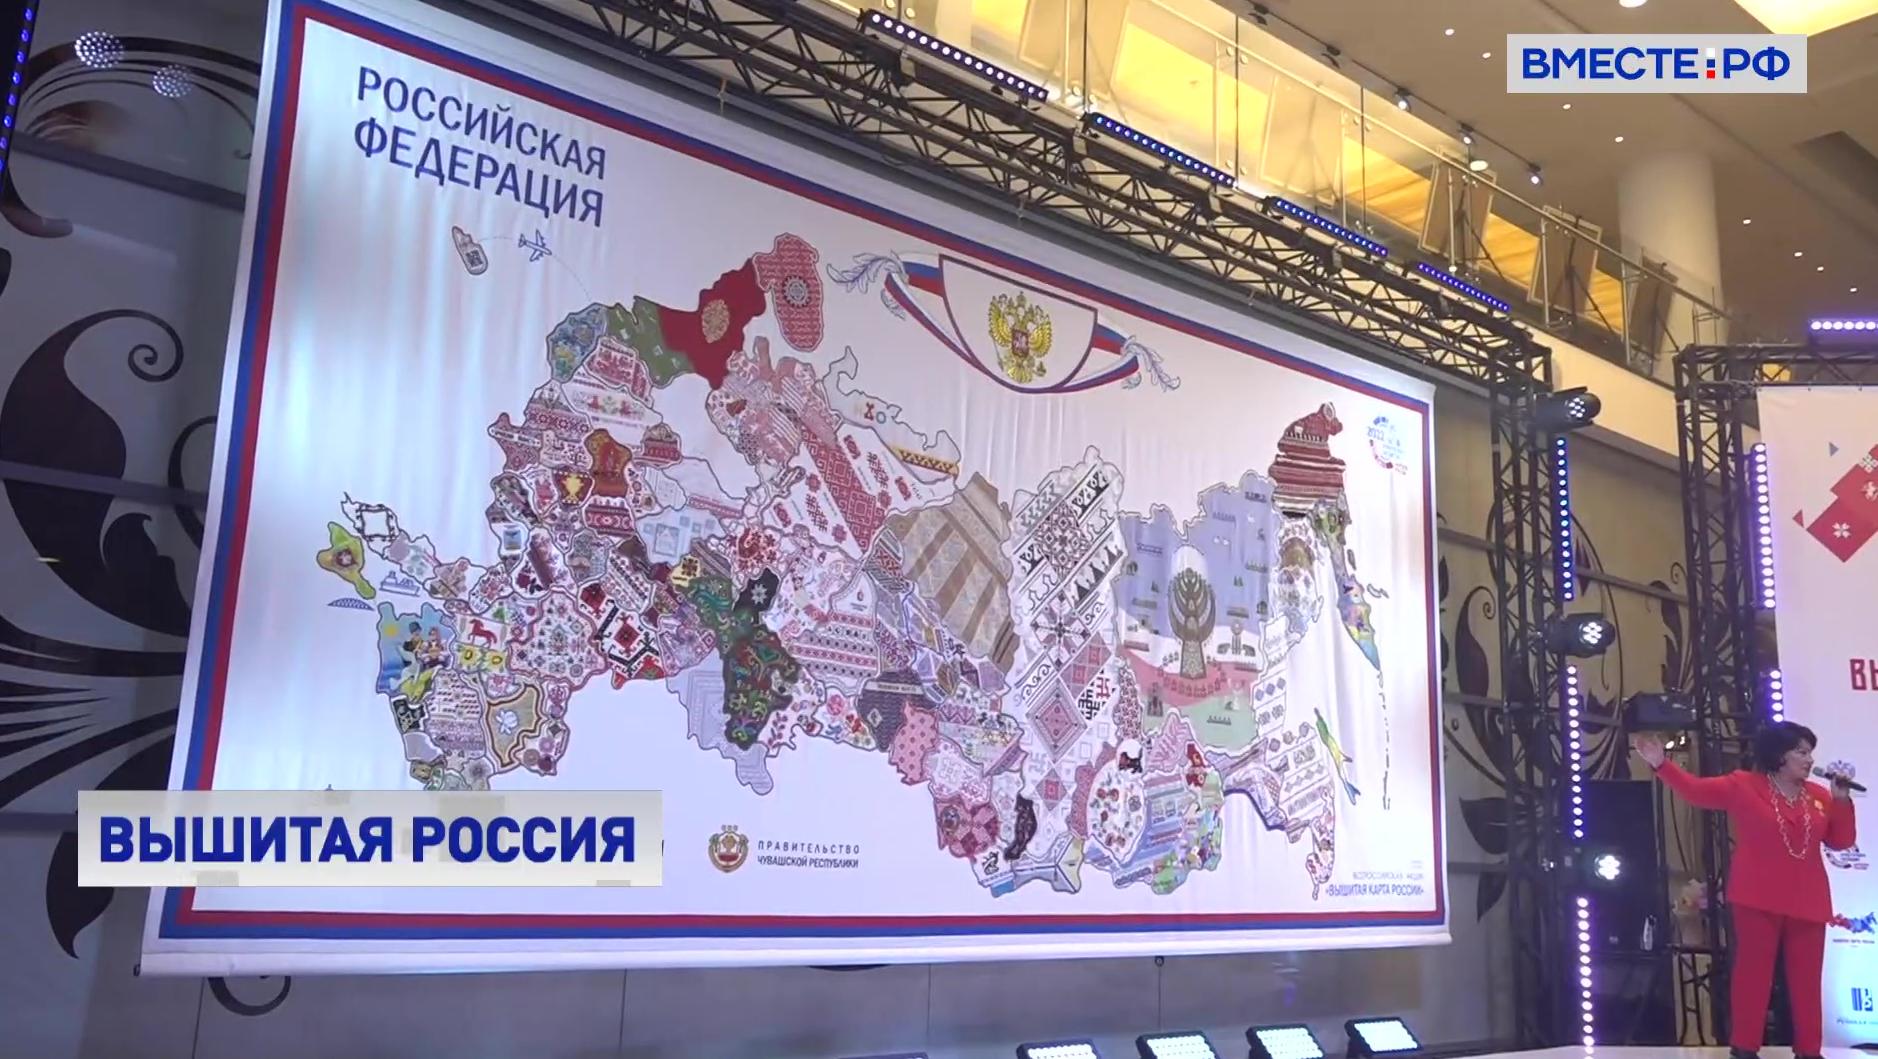 Обновленную «Вышитую карту России» представили на сцене театра «Русская песня» в Москве 